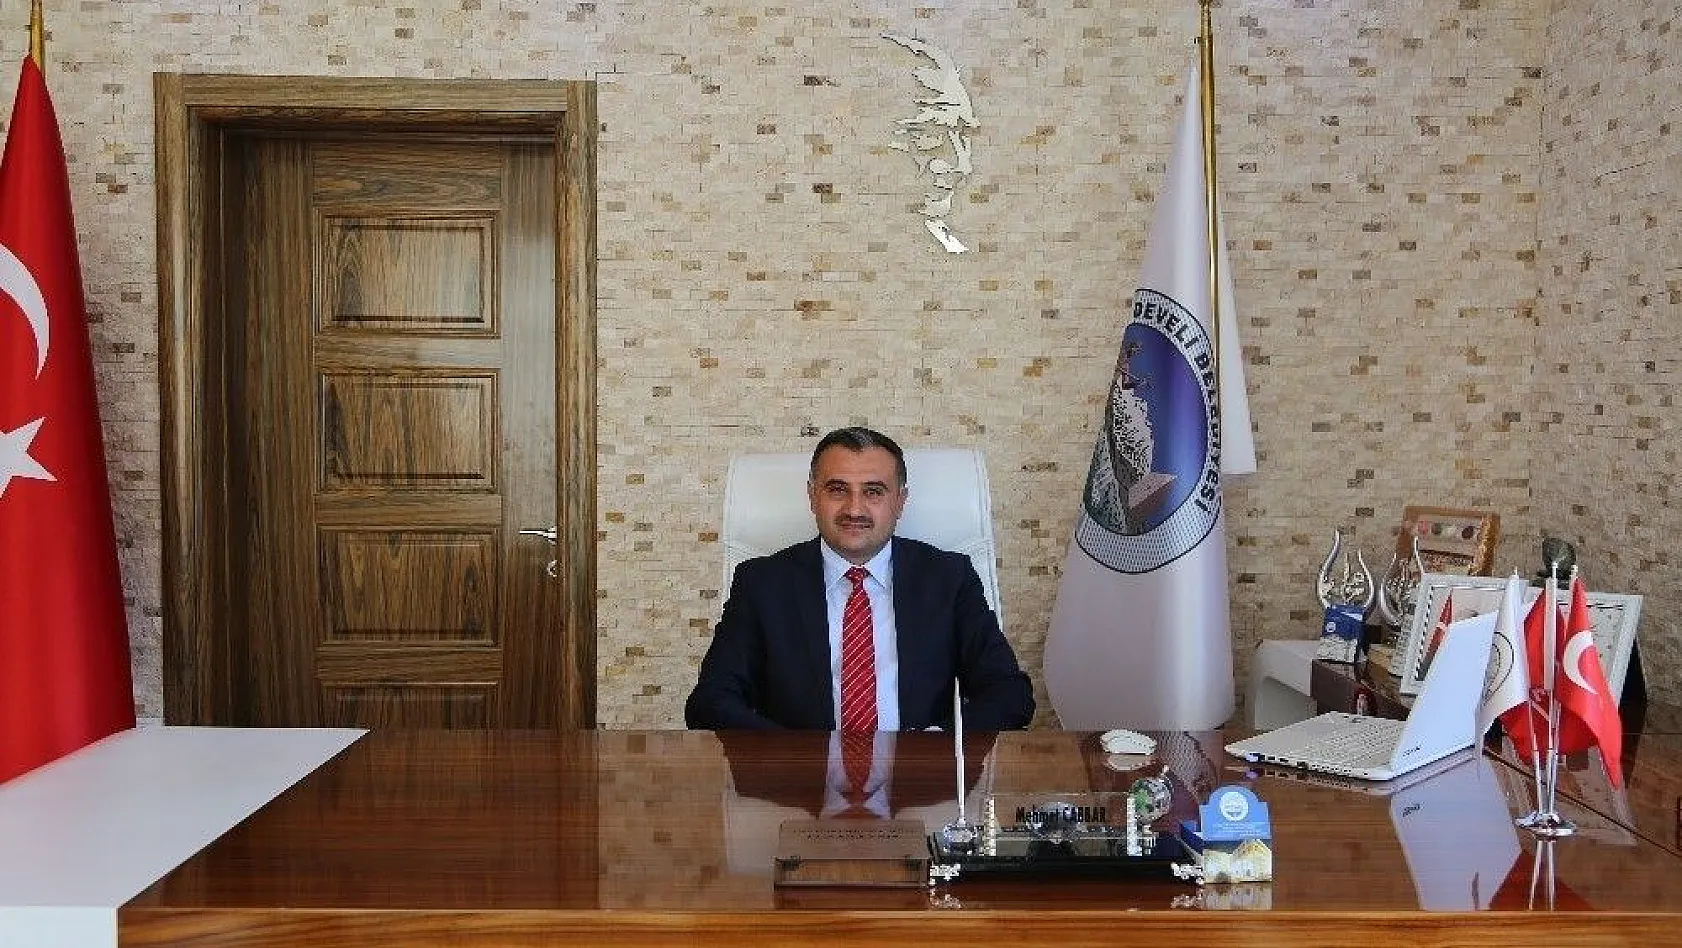 Başkan Mehmet Cabbar:'Kandilinin tüm insanlık için huzur iklimi yaşatmasını diliyorum'
